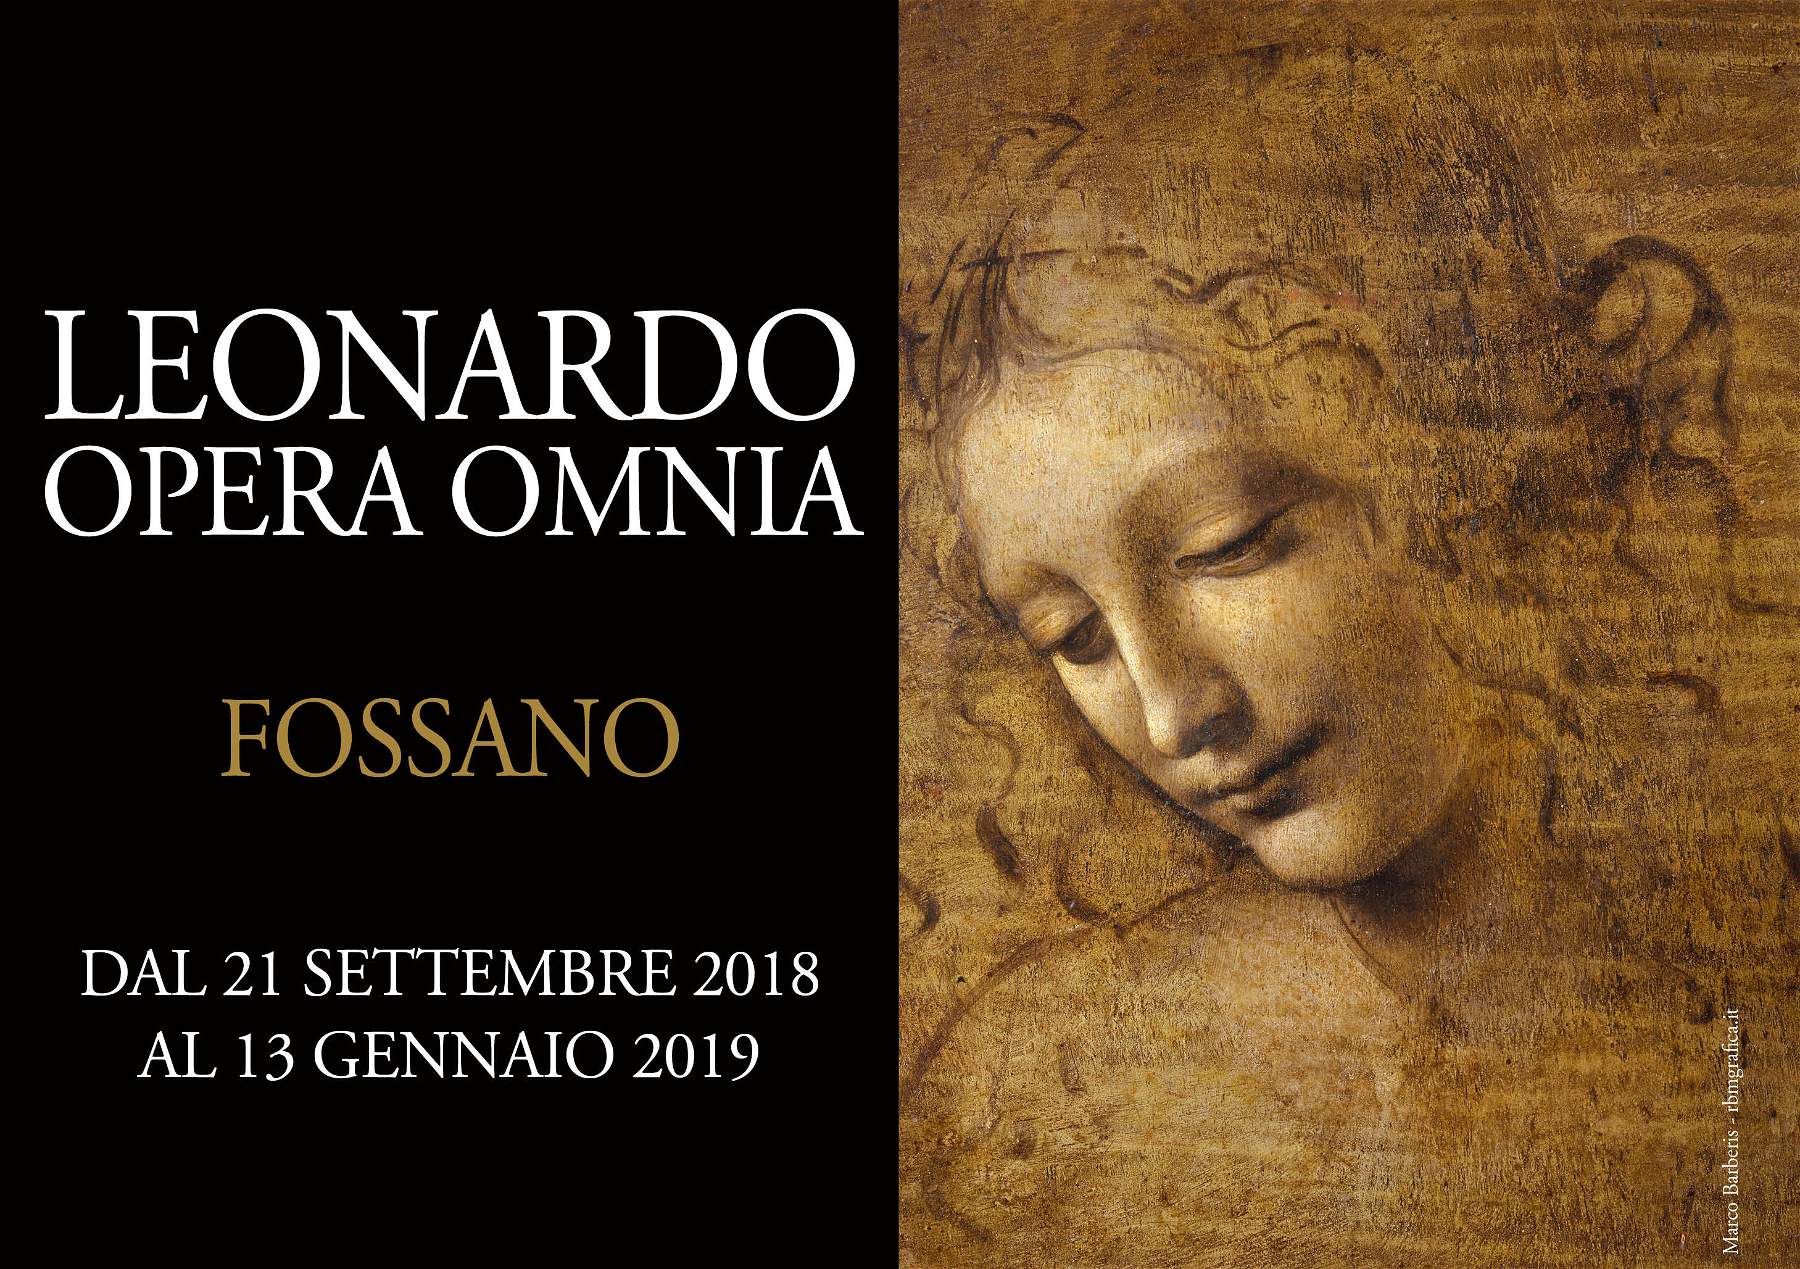 Ouverture de Fossano, une exposition de reproductions d'œuvres de Léonard de Vinci, sous la direction d'Antonio Paolucci